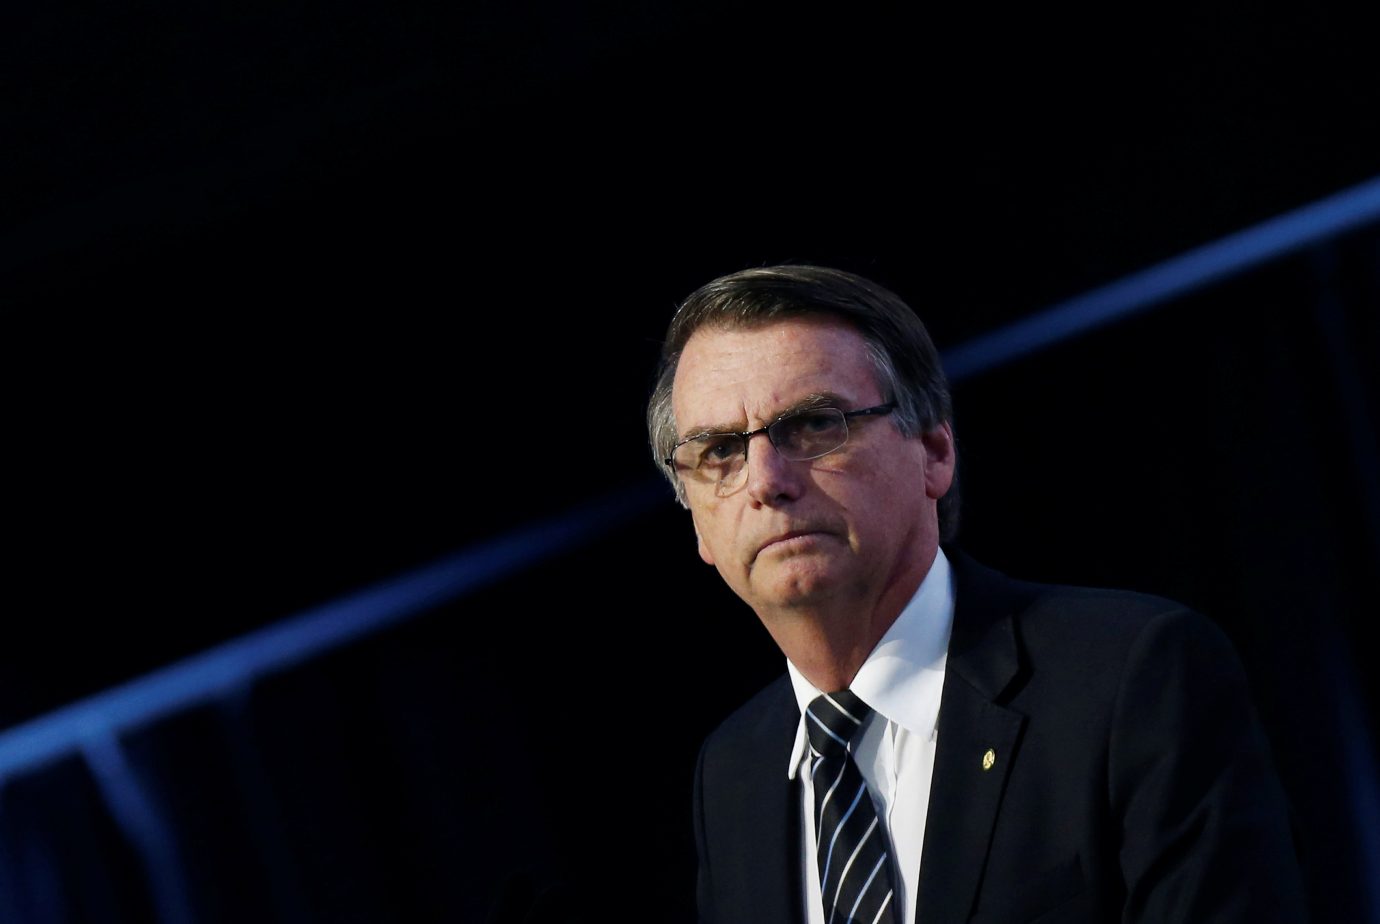 Reunião anual de Davos sem estrelas políticas olha para Bolsonaro